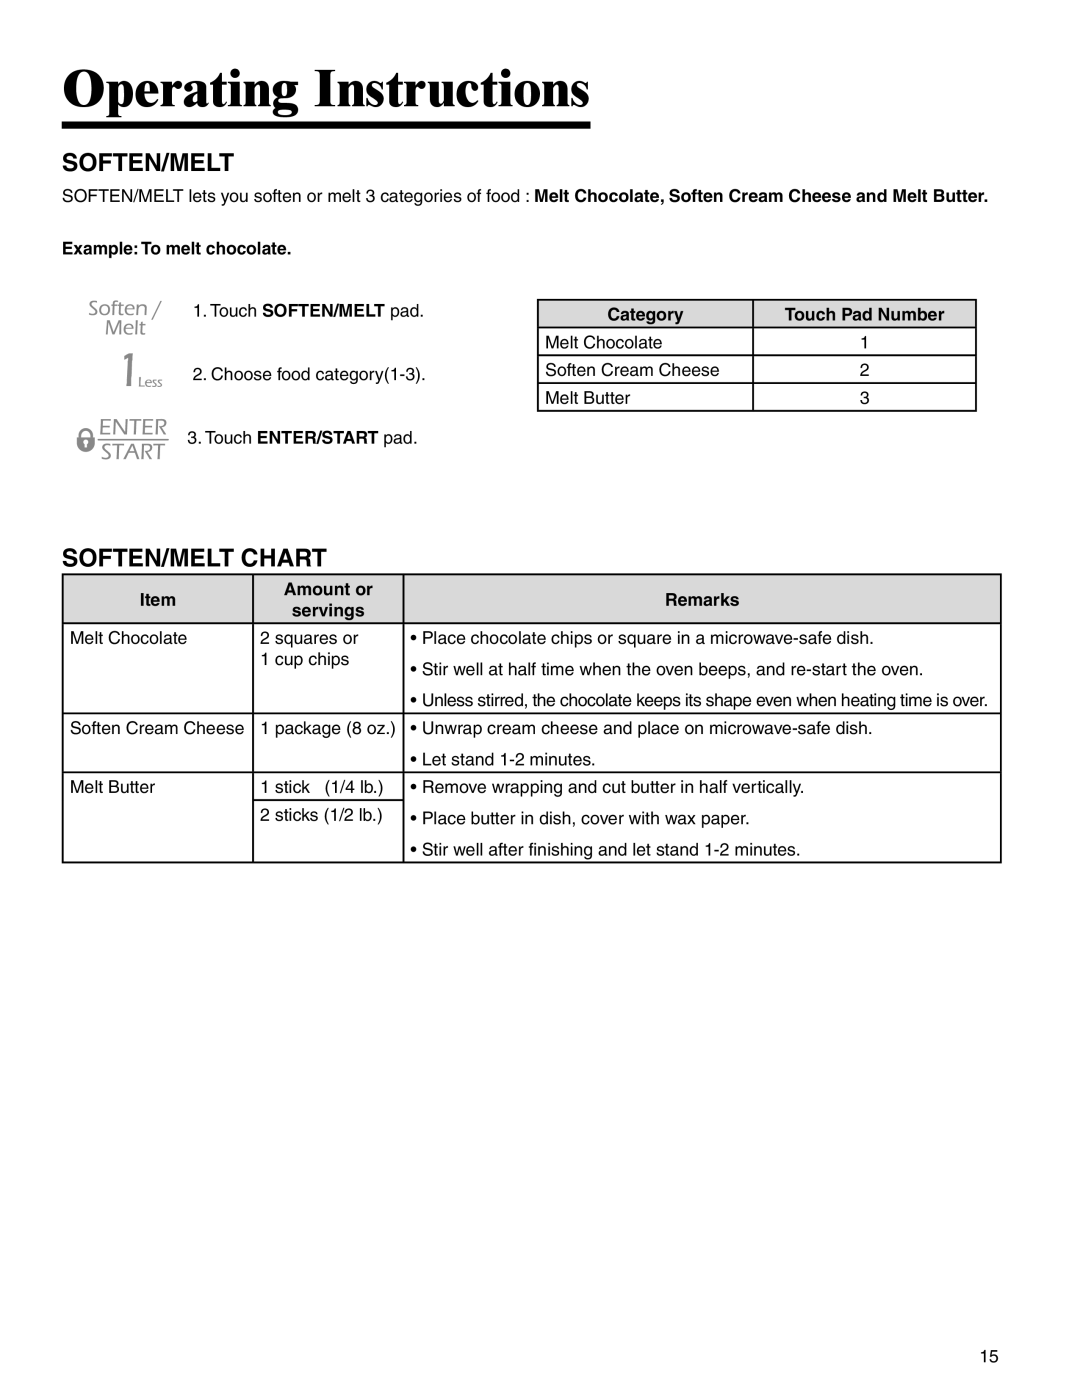 Maytag UMC5200BAB/W/S Soften/Melt Chart, Operating Instructions, Example: To melt chocolate, Category, Item, Amount or 